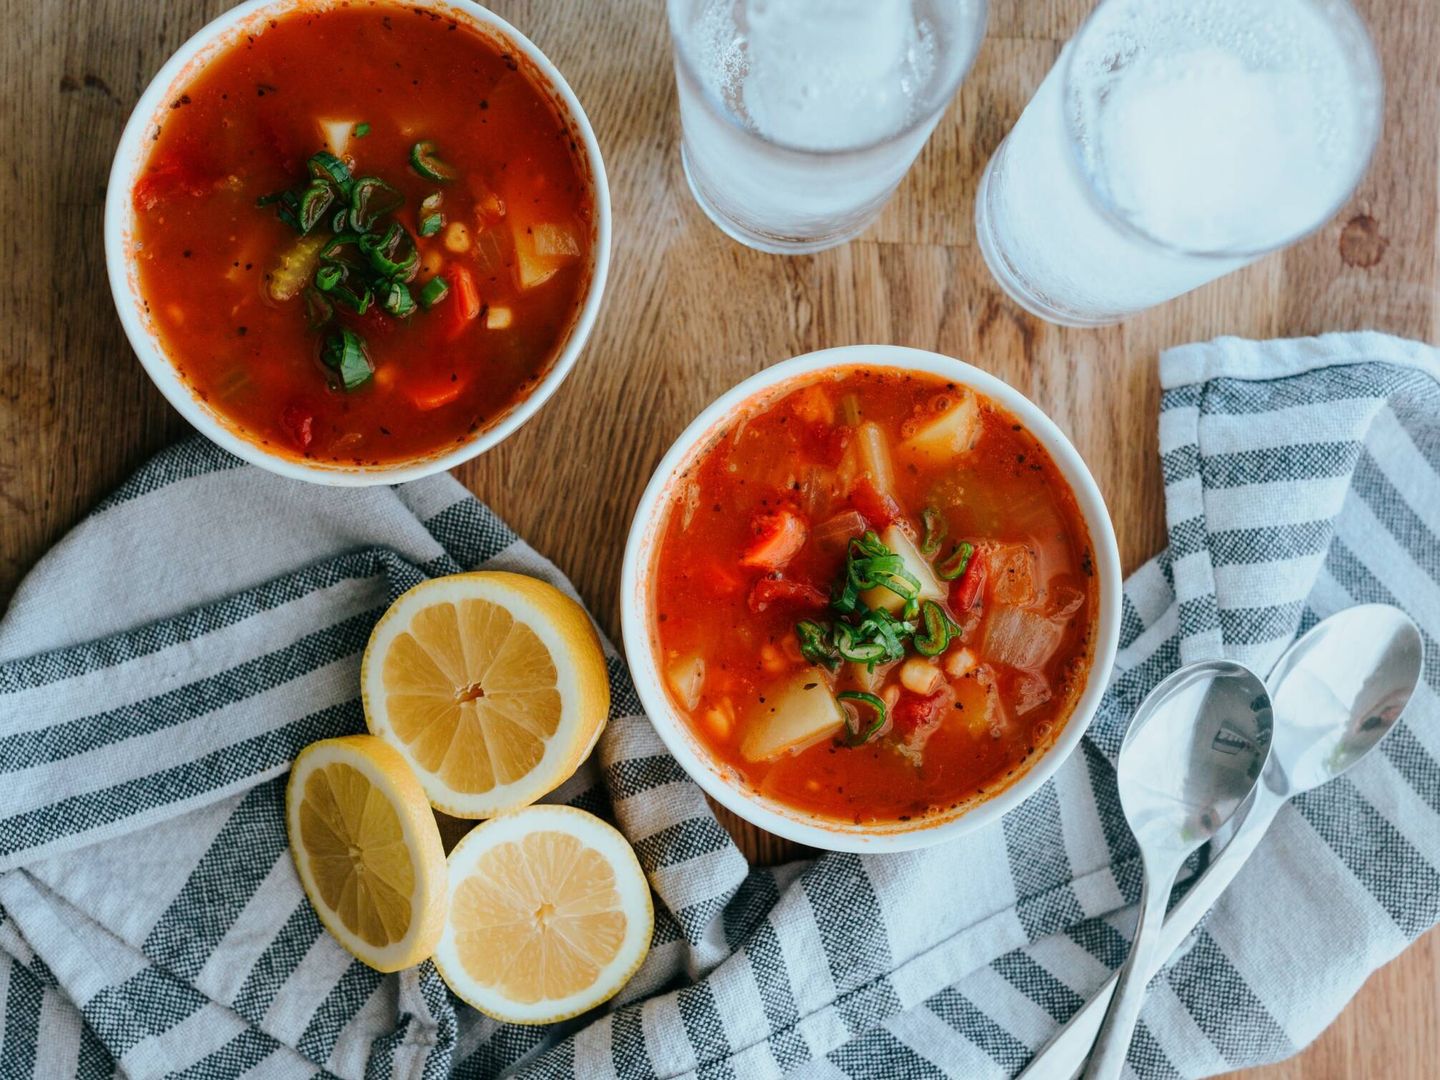 Los restaurantes italianos ofertan un producto llamado minestrone habitualmente, que es una sopa baja en calorías (Unsplash)